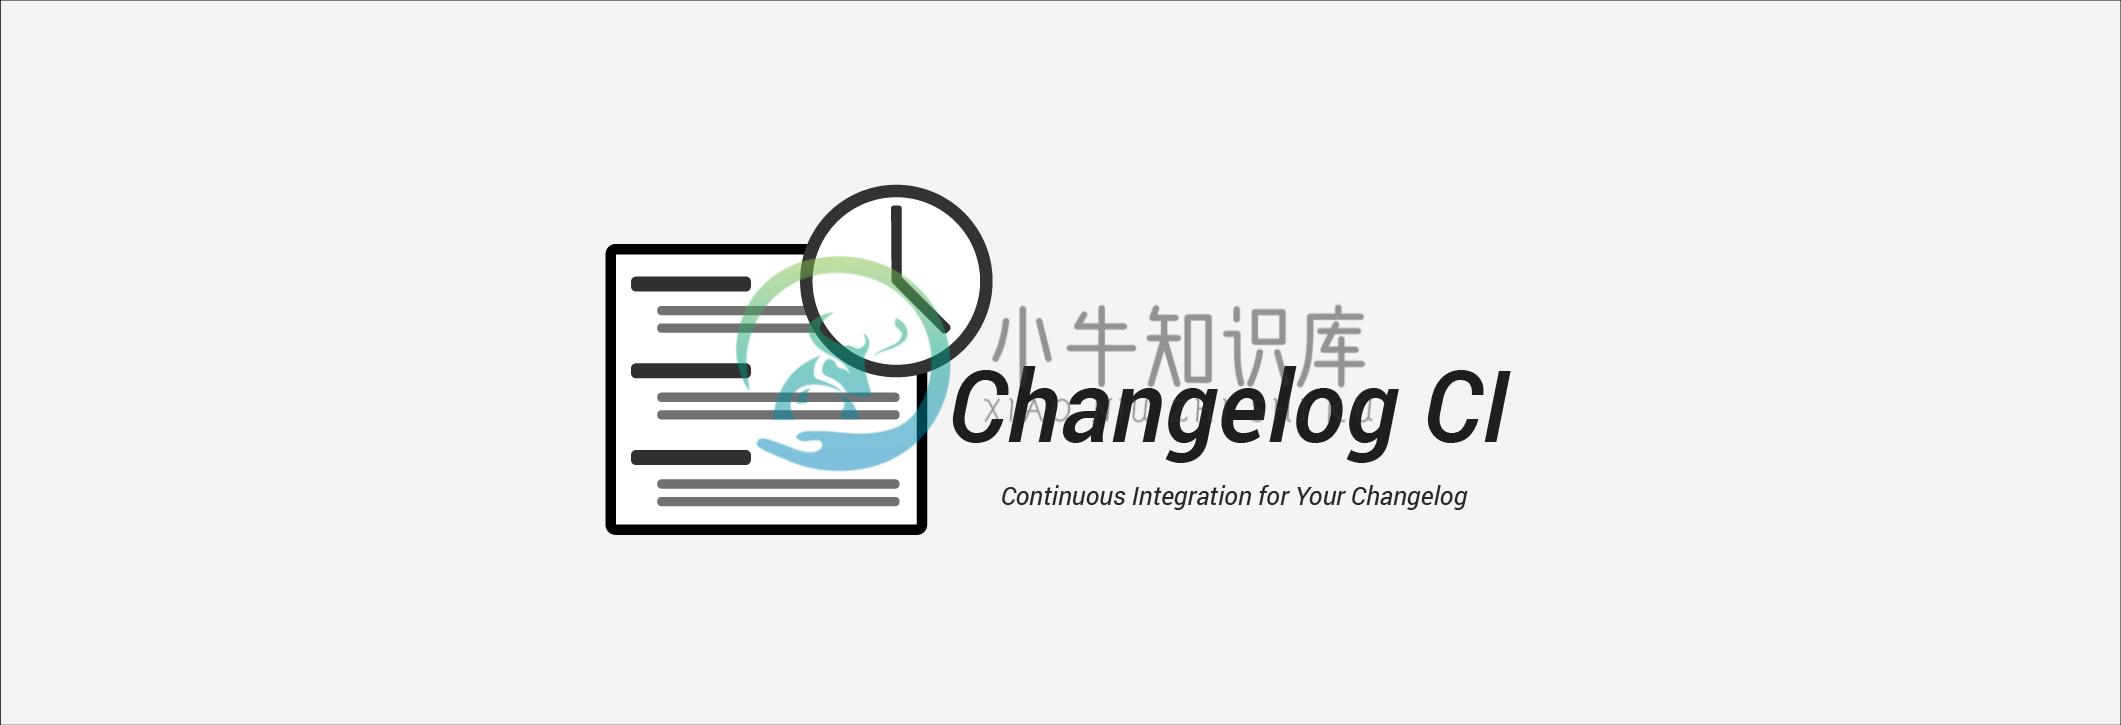 Changelog CI Banner